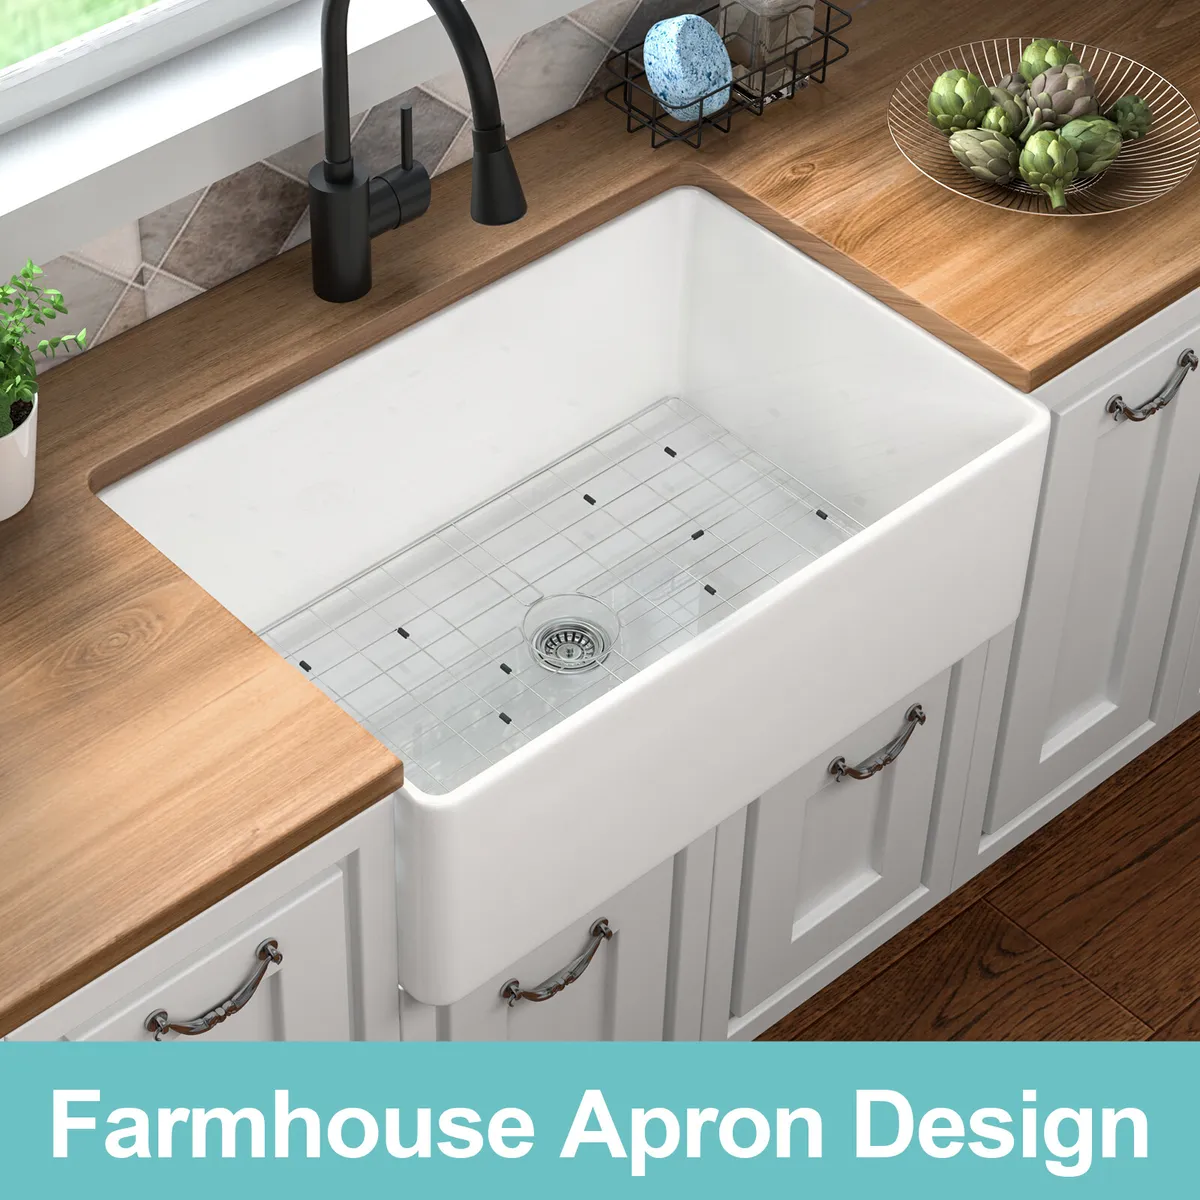 Faucets, Drains & Parts, Sinks & Desks: Farm and Ranch Depot